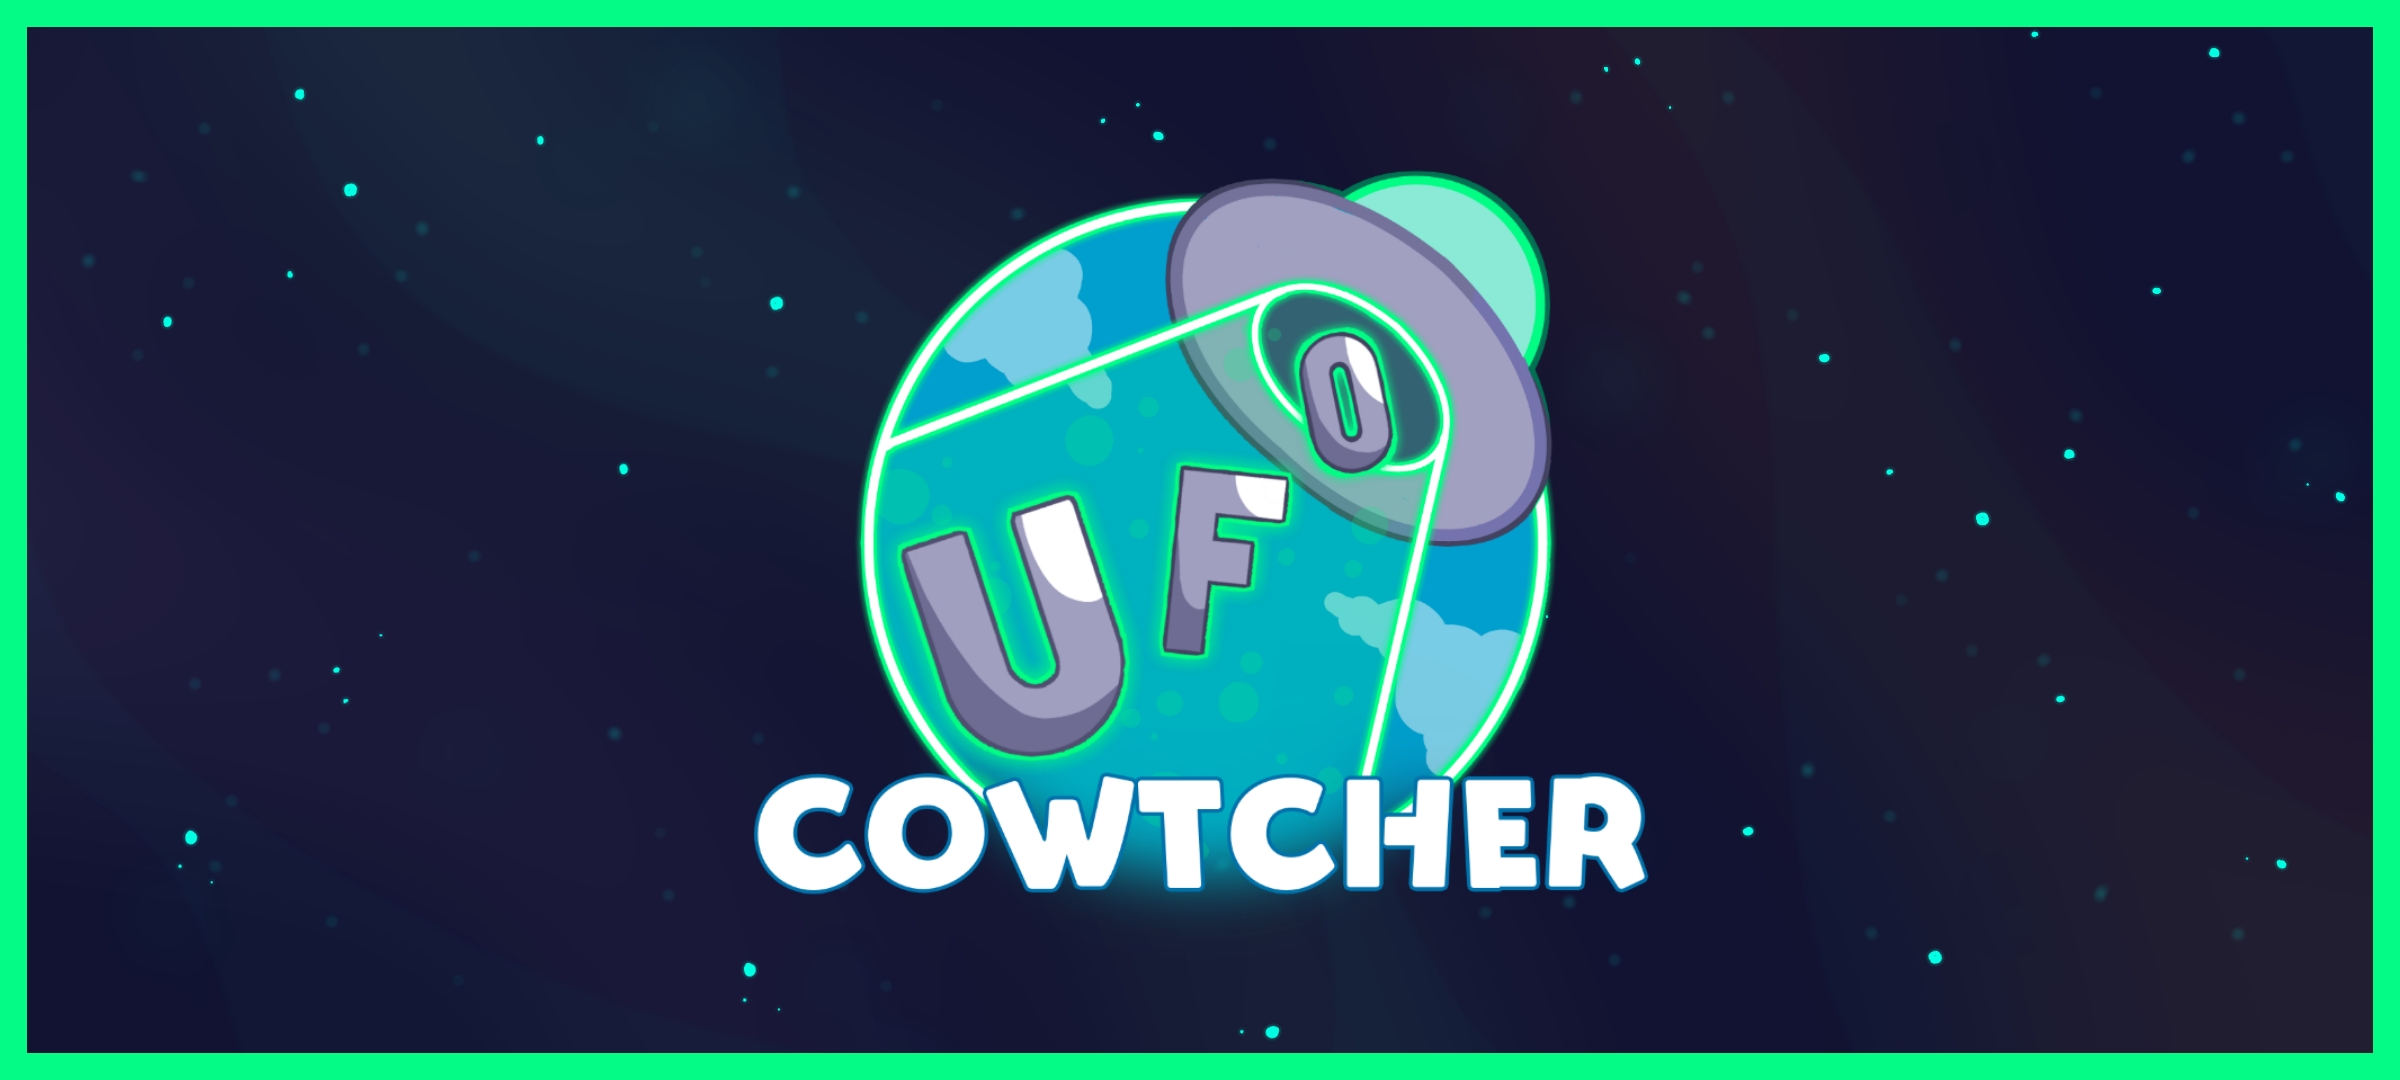 UFO Cowtcher